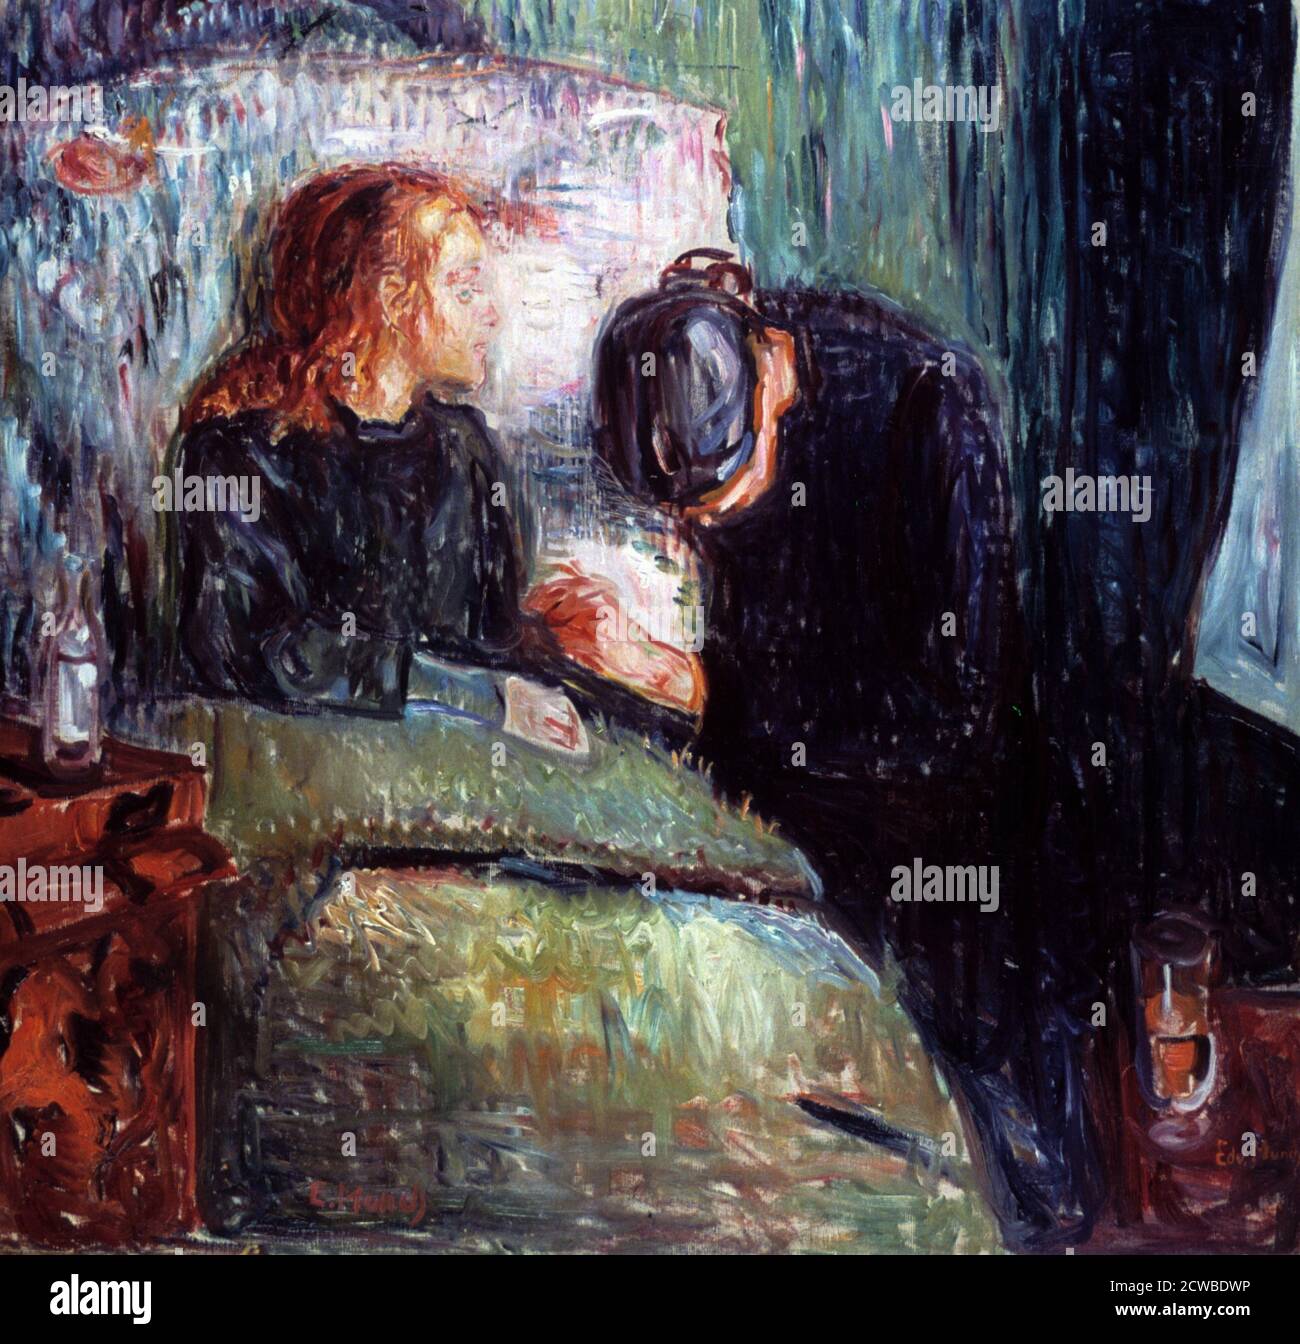 Das Kranke Kind', 1907. Künstler: Edvard Munch. Edvard Munch ist ein norwegischer Maler, Expressionist und Drucker. Er spielte eine große Rolle im deutschen Expressionismus. Stockfoto